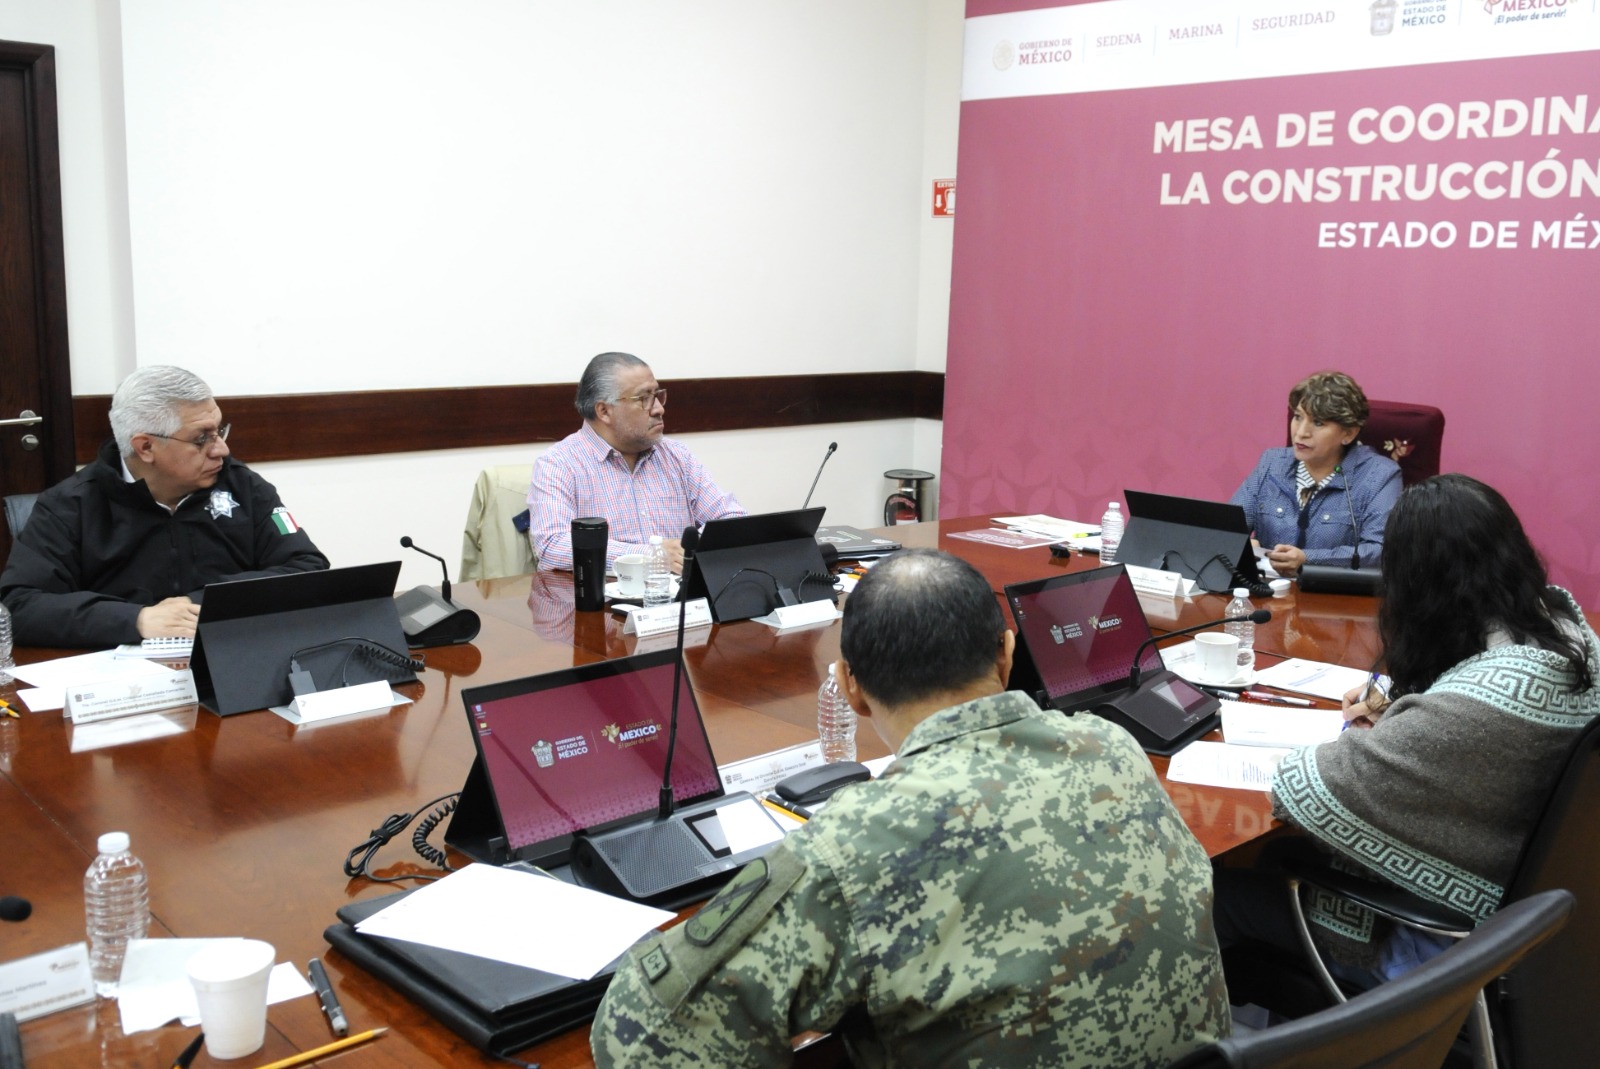 Delfina Gómez hizo hincapié en que la construcción de la paz requiere un trabajo coordinado y constante por parte de los municipios, estado y federación.